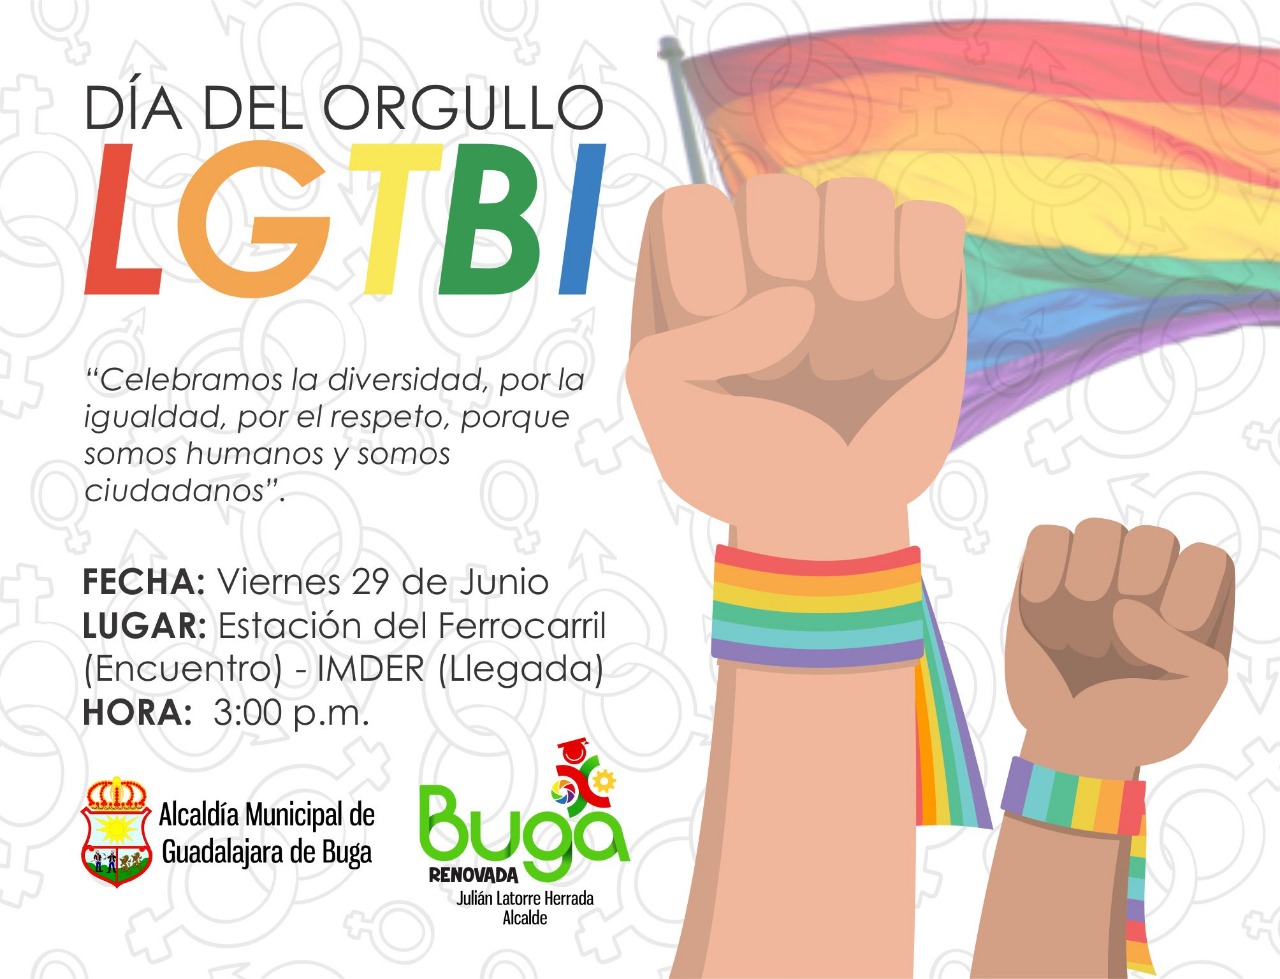  Dia Del Orgullo LGBT  3 Marcha LGBTI de Guadalajara De Buga 2018 [BUGA] 